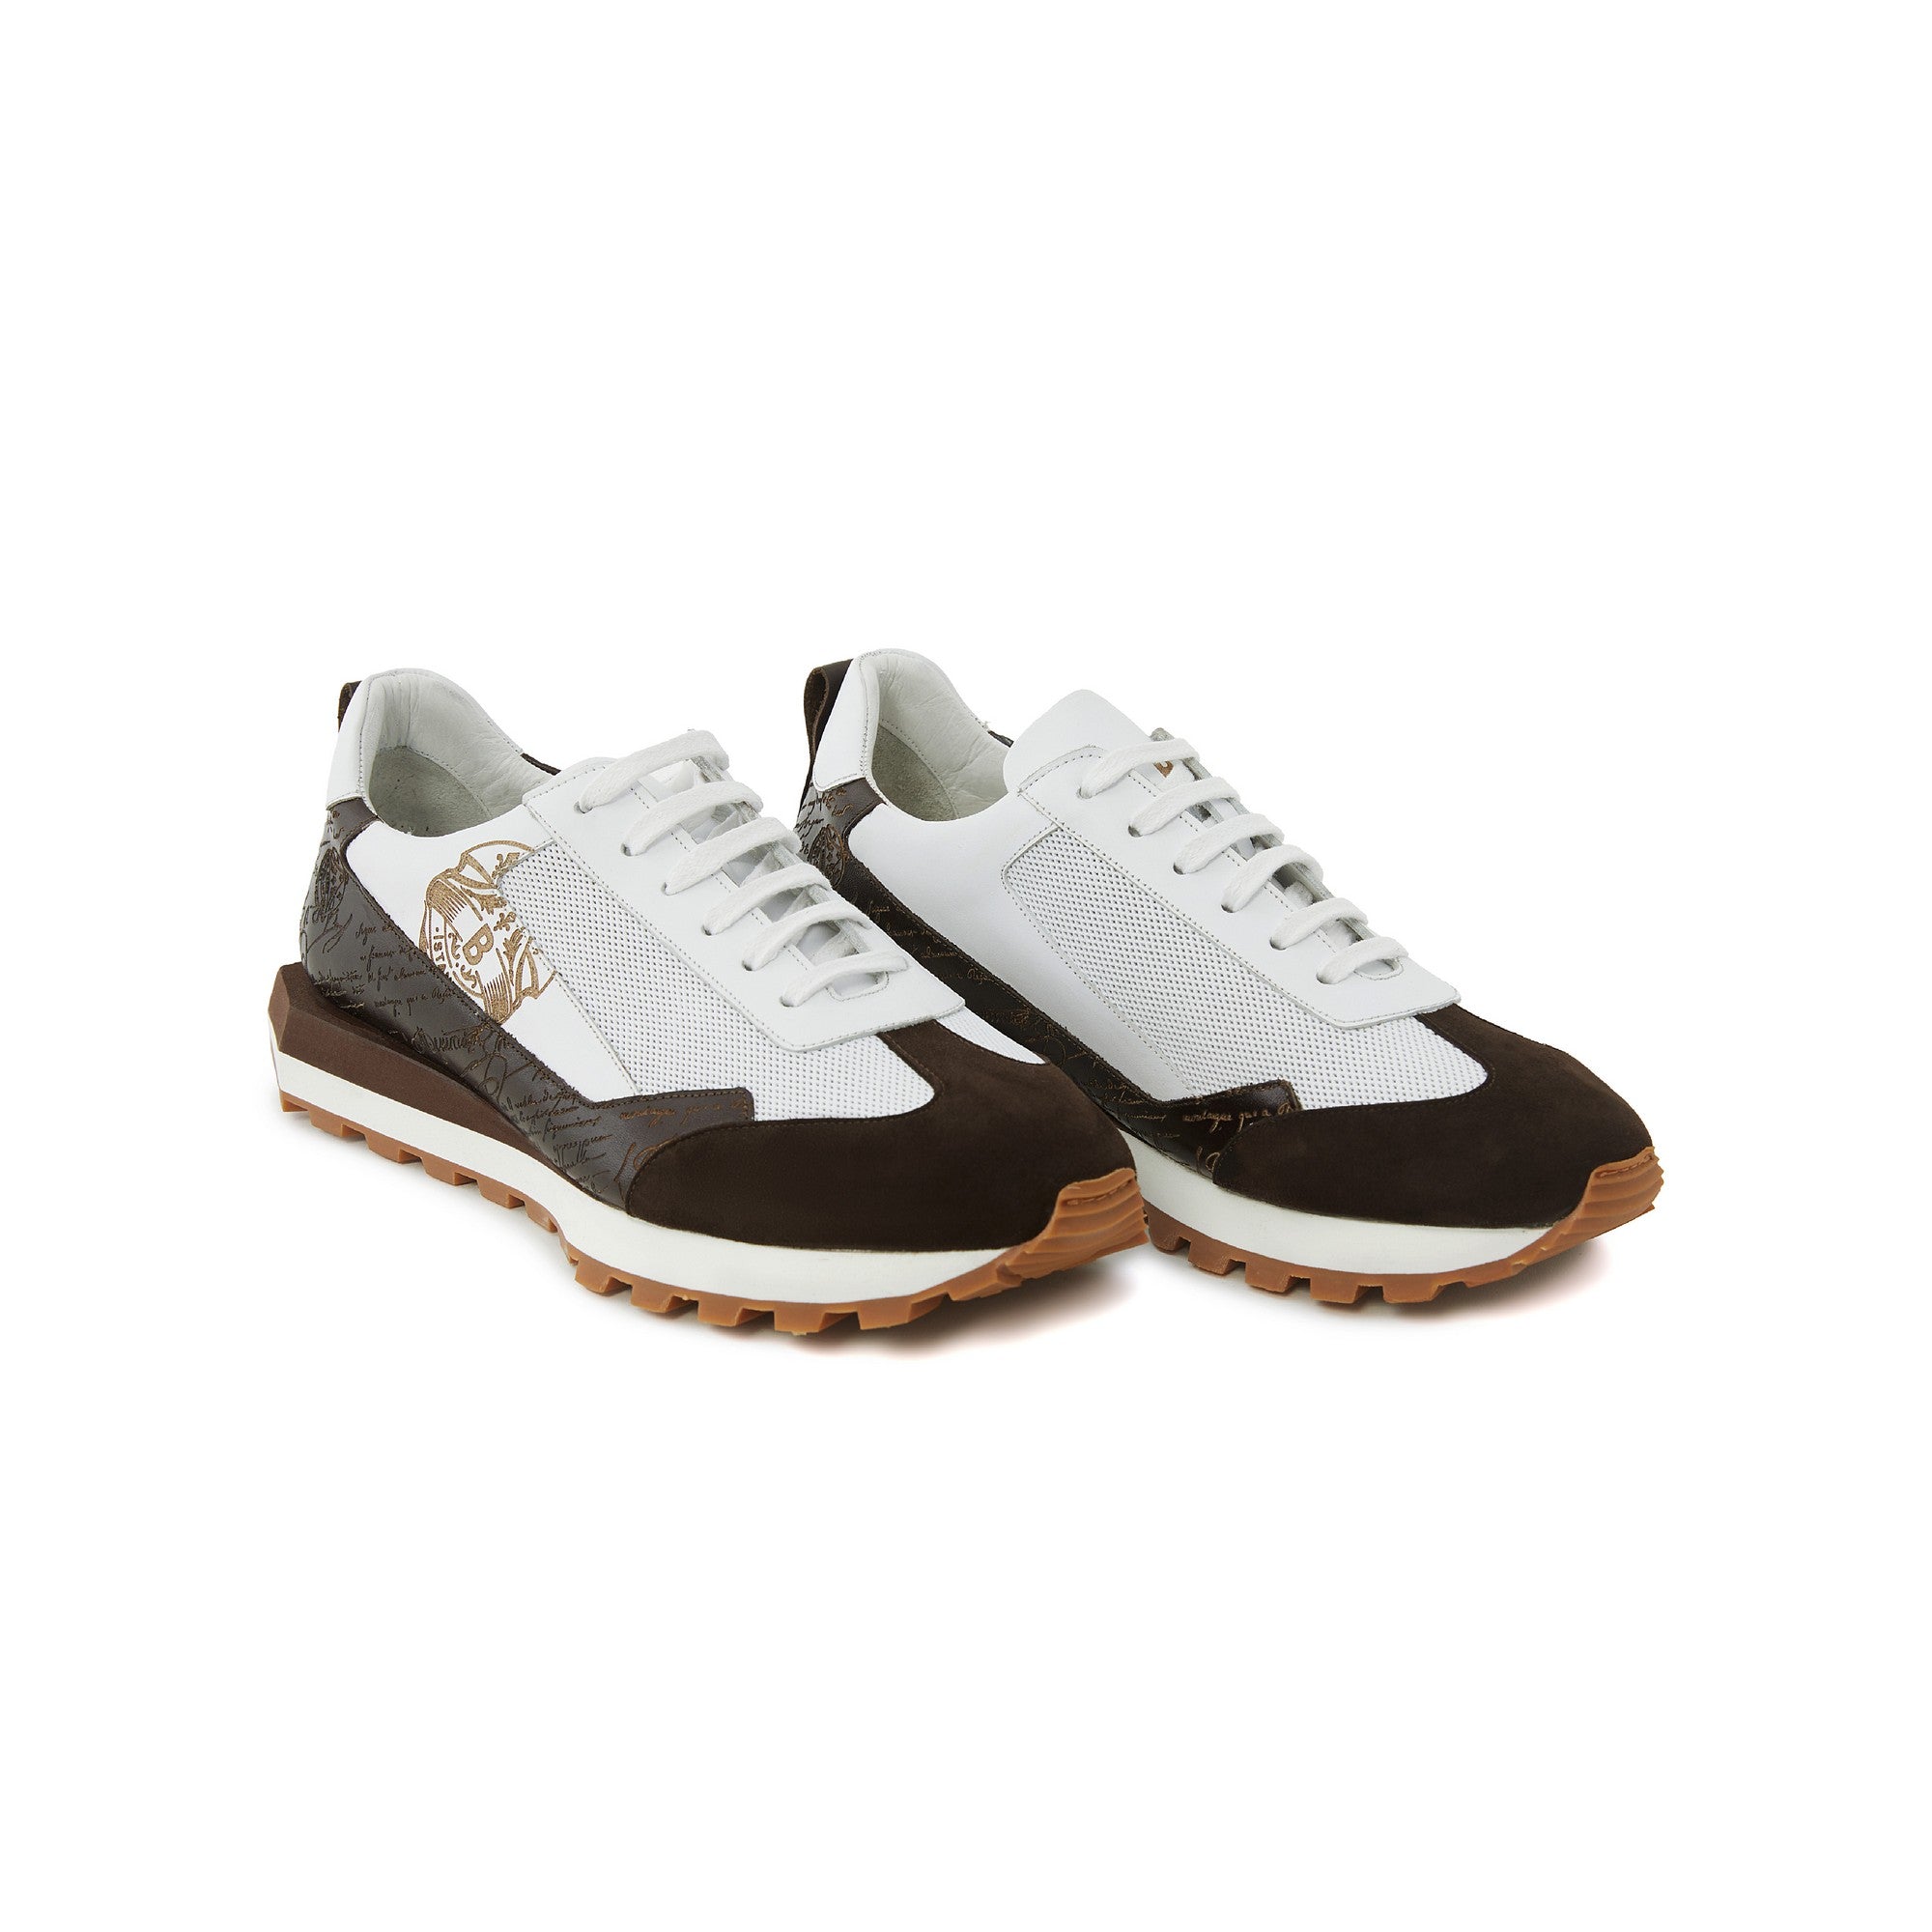 Men's Calf Leather Handmade Sneakers M8022